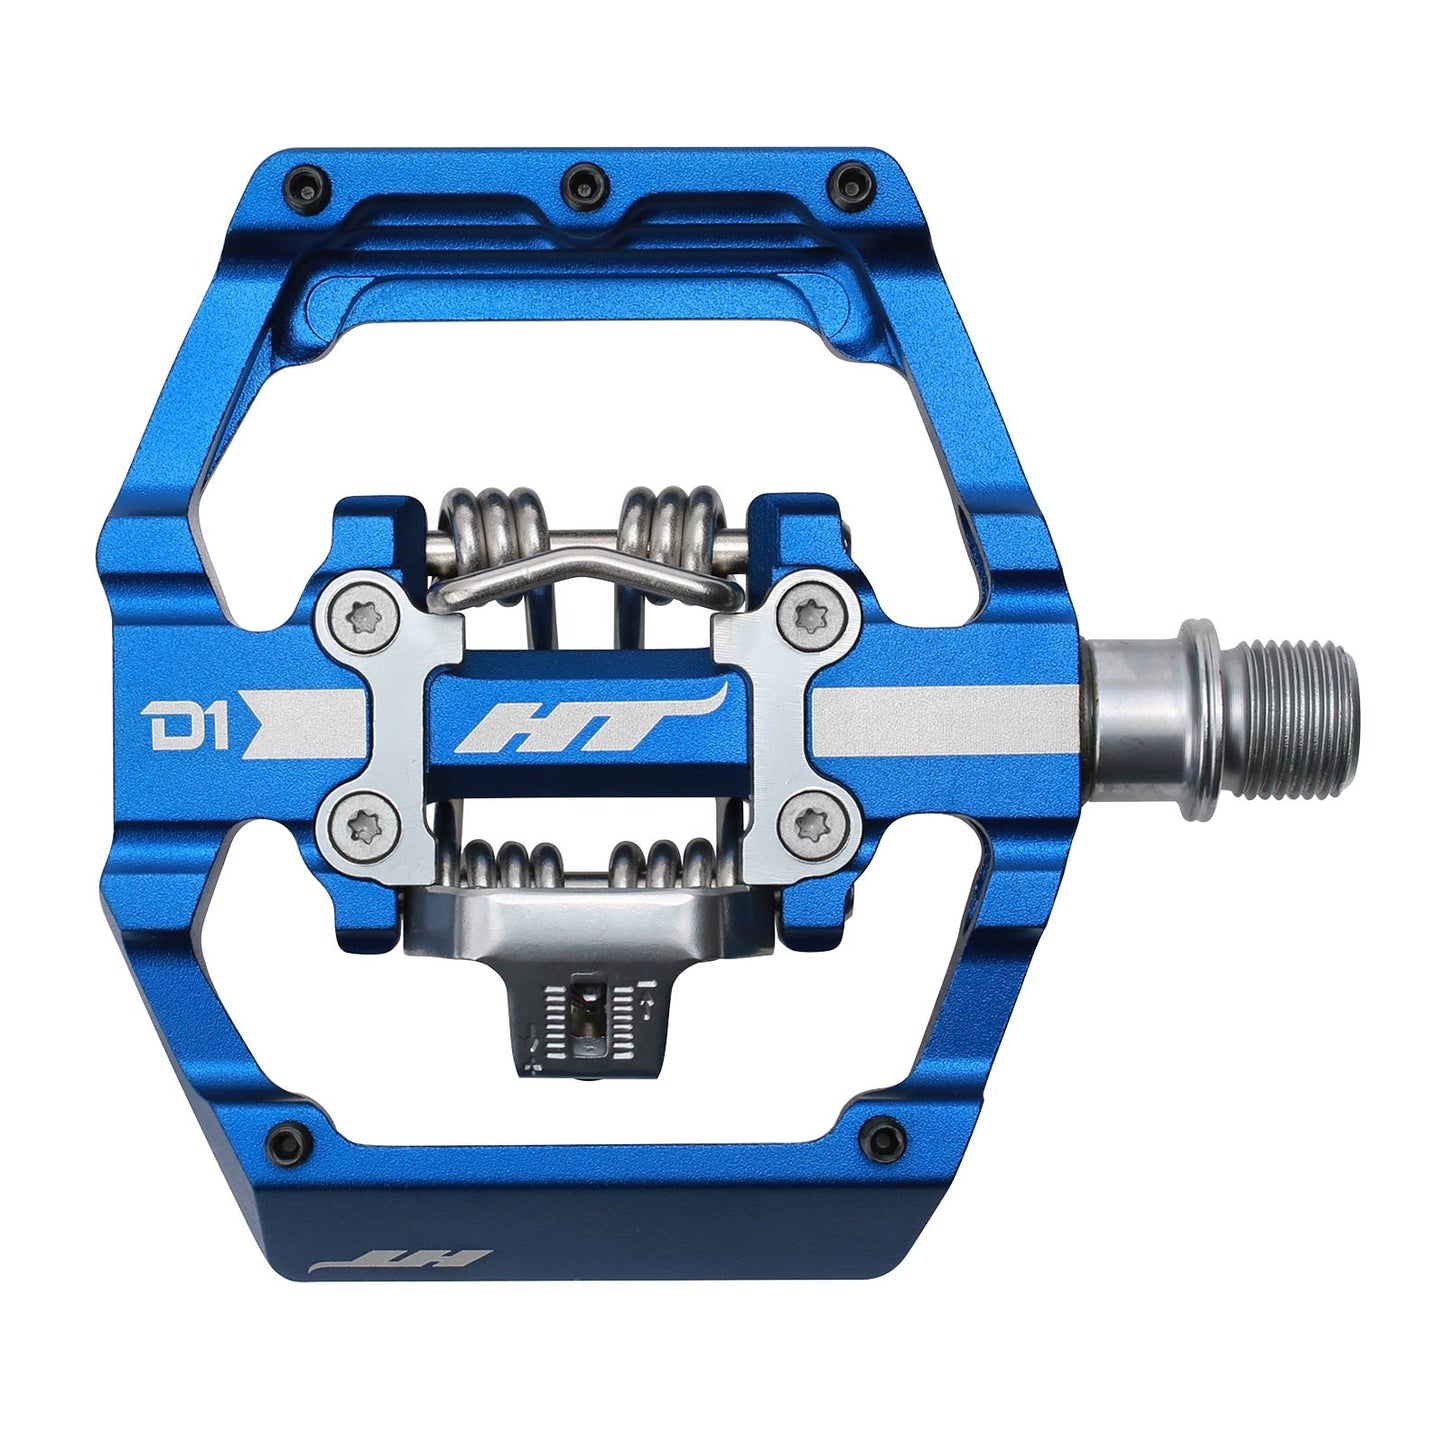 Ht D1 Pedals Alloy / CNC CRMO - Royal Blue